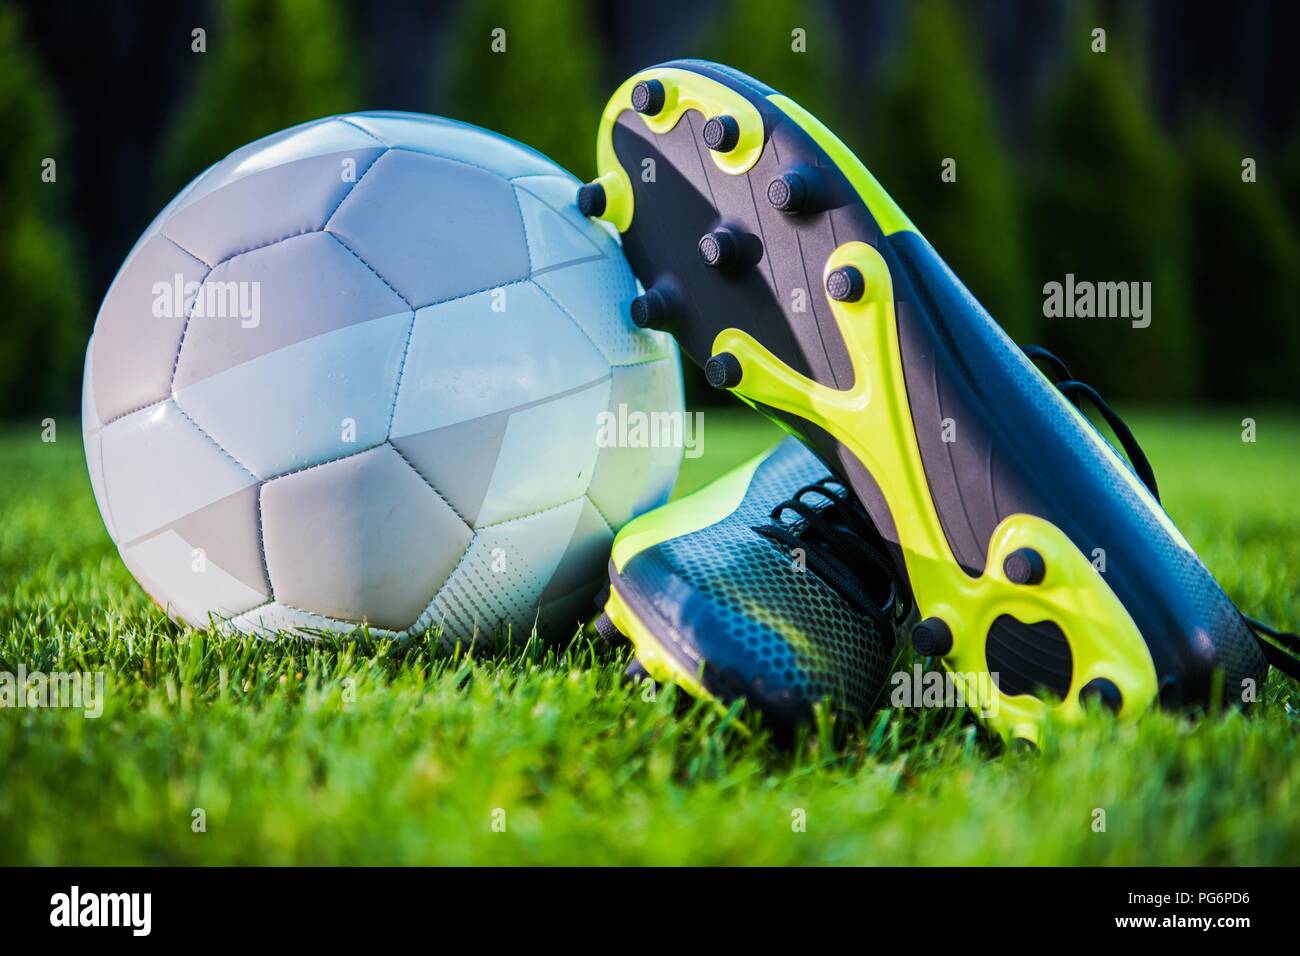 Tournoi de soccer Concept avec ballon de football moderne et Player Cleats Shoes. Thème Sports d'équipe. Banque D'Images